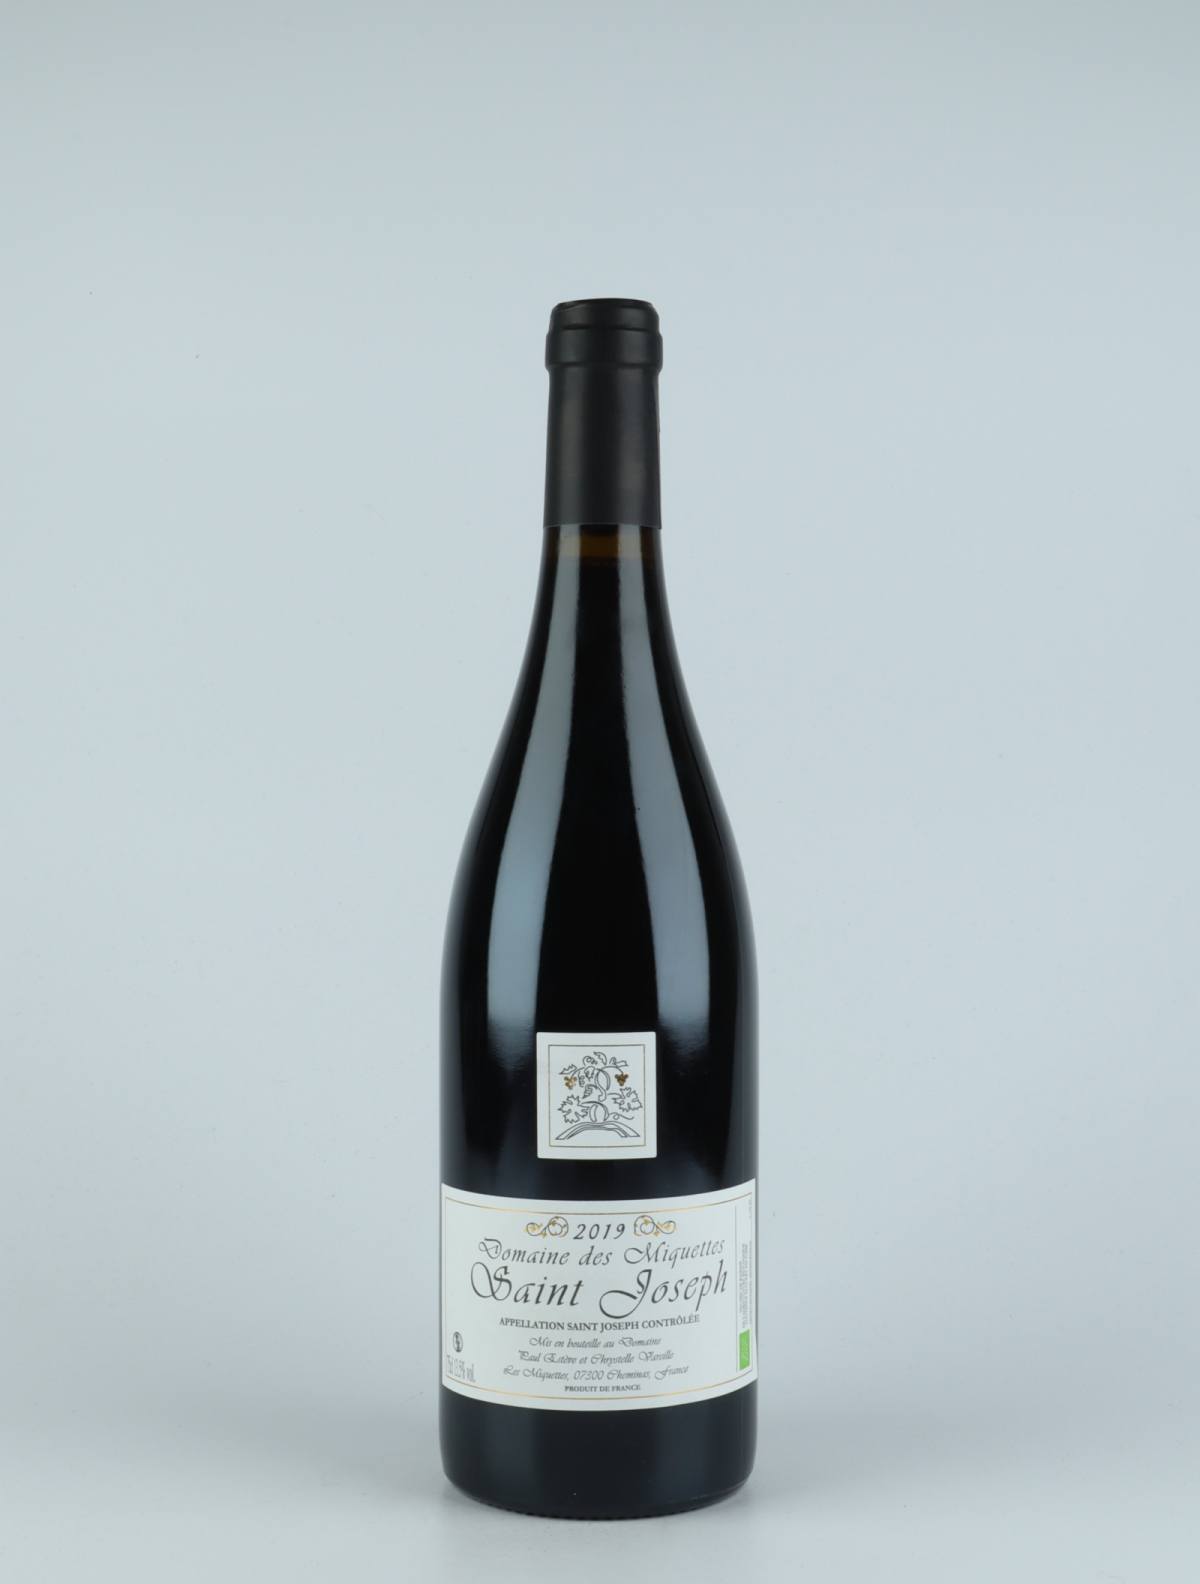 En flaske 2019 Saint-Joseph Rouge Rødvin fra Domaine des Miquettes, Rhône i Frankrig